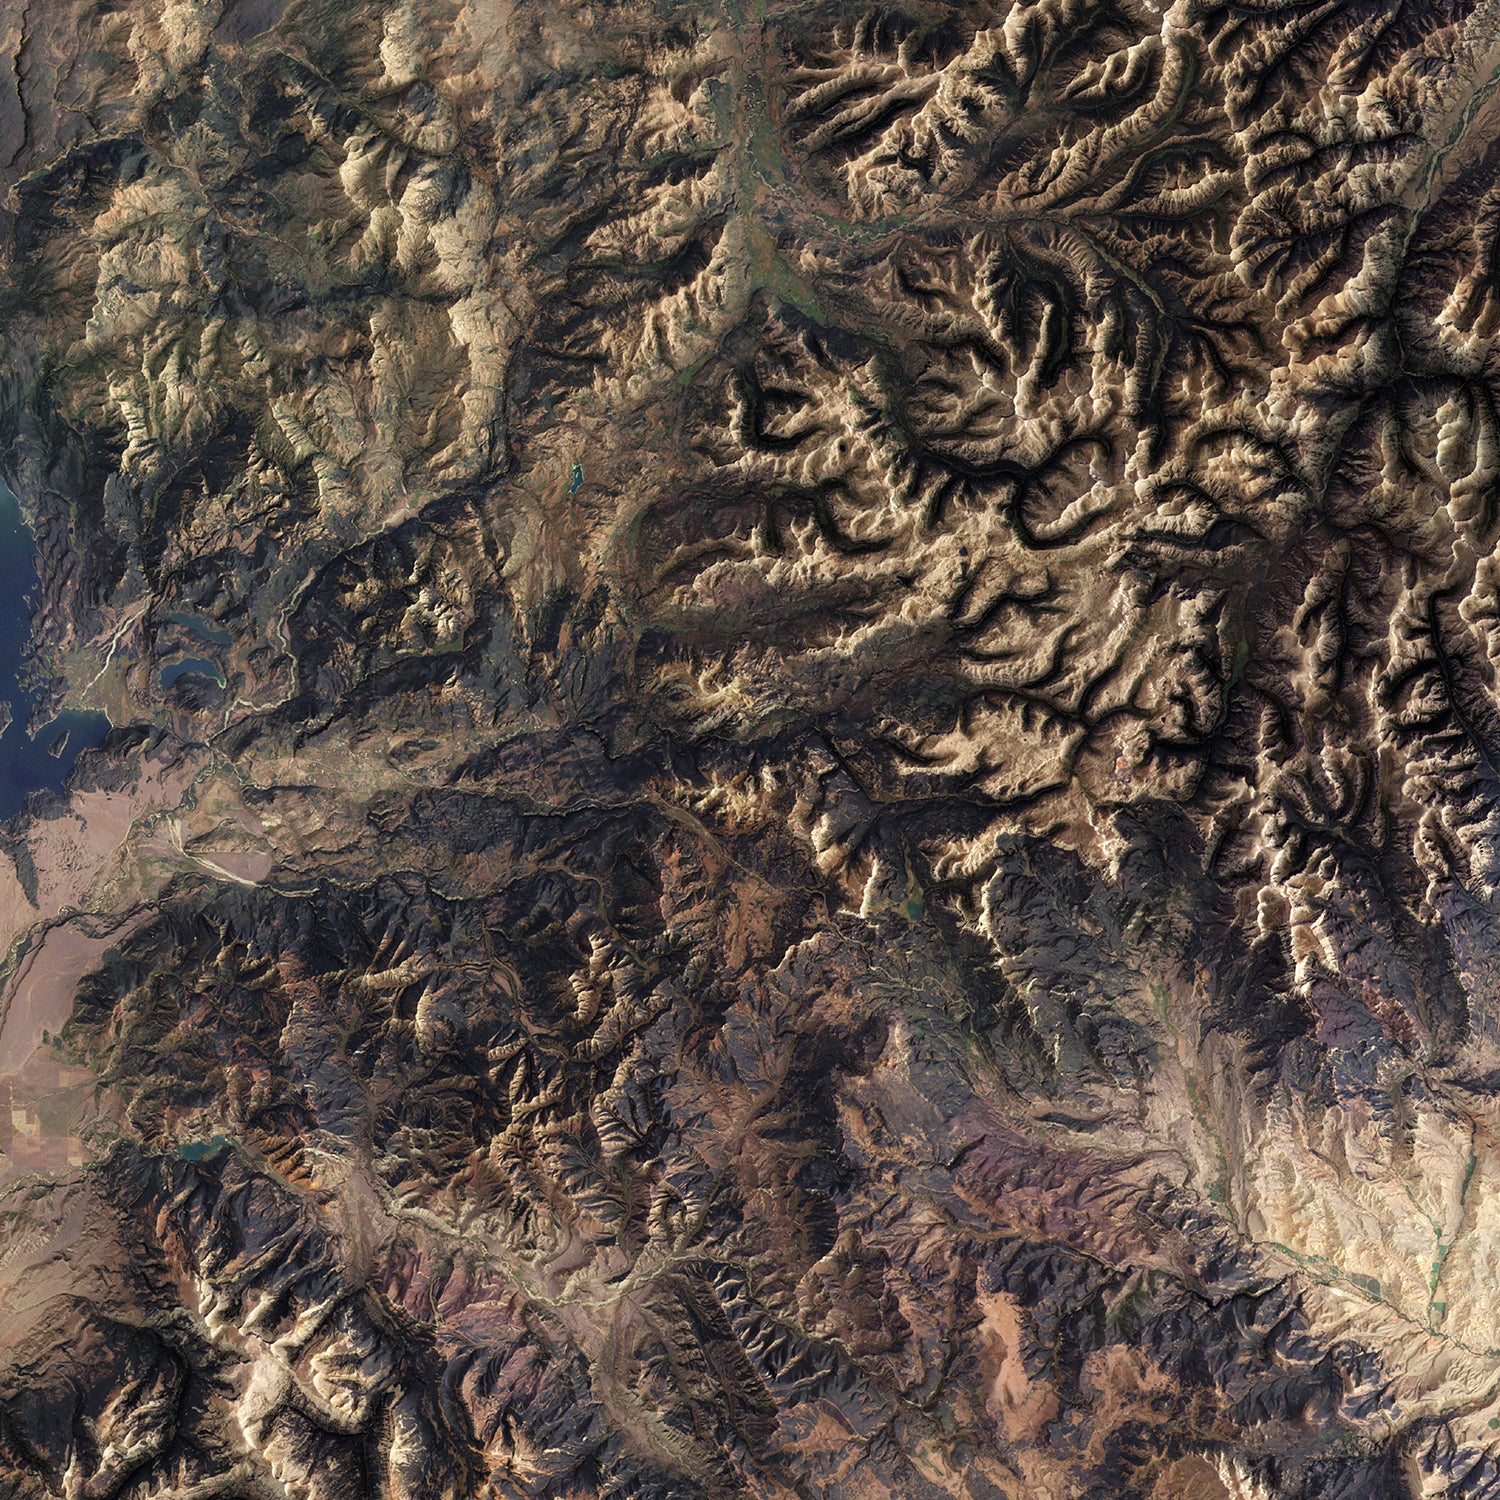 Northwest Wyoming - Satellite Imagery